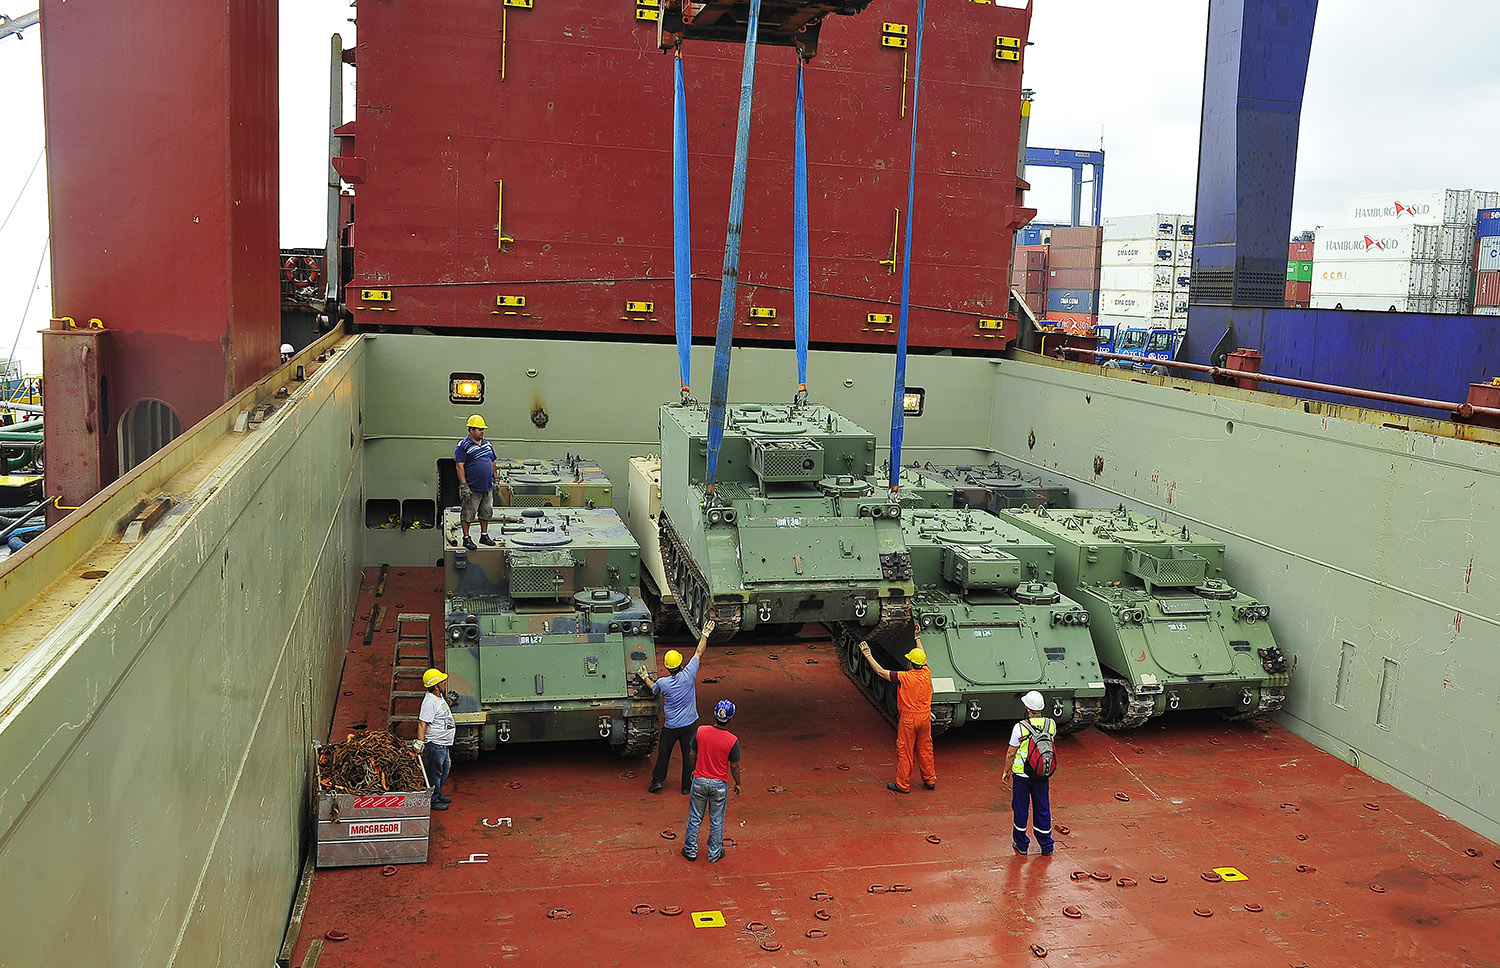 O Porto de Paranaguá desembarcou nesta segunda-feira [19) um carregamento de 52 veículos blindados para uso do Exército Brasileiro. Paranaguá, 19/09/2016. Foto: Ivan Bueno/APPA